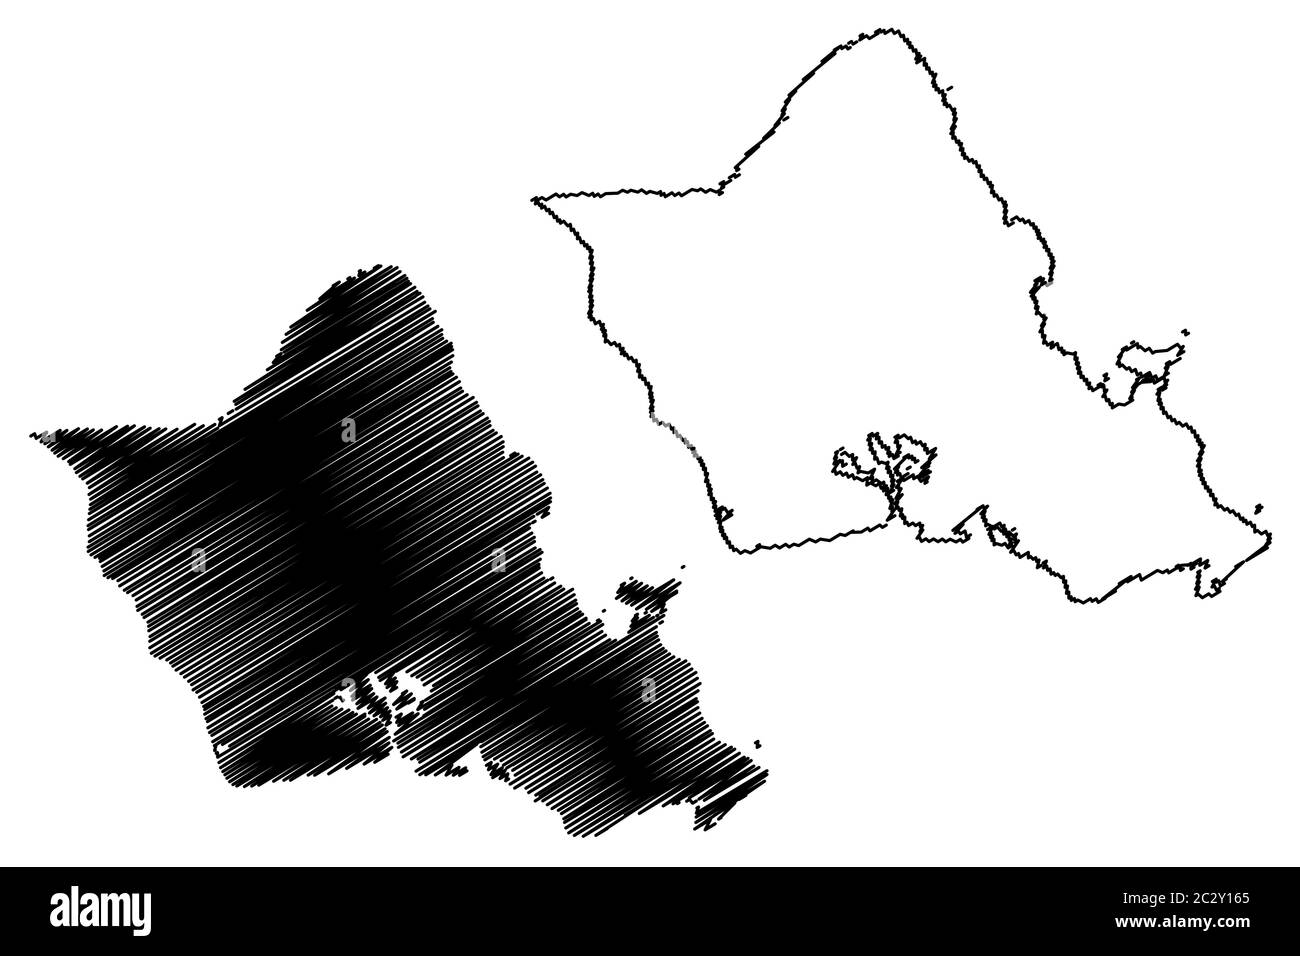 Ville et Comté d'Honolulu, Hawaï (comté des États-Unis, États-Unis d'Amérique, États-Unis, États-Unis, île, archipel) illustration vectorielle de carte, Scribble sket Illustration de Vecteur